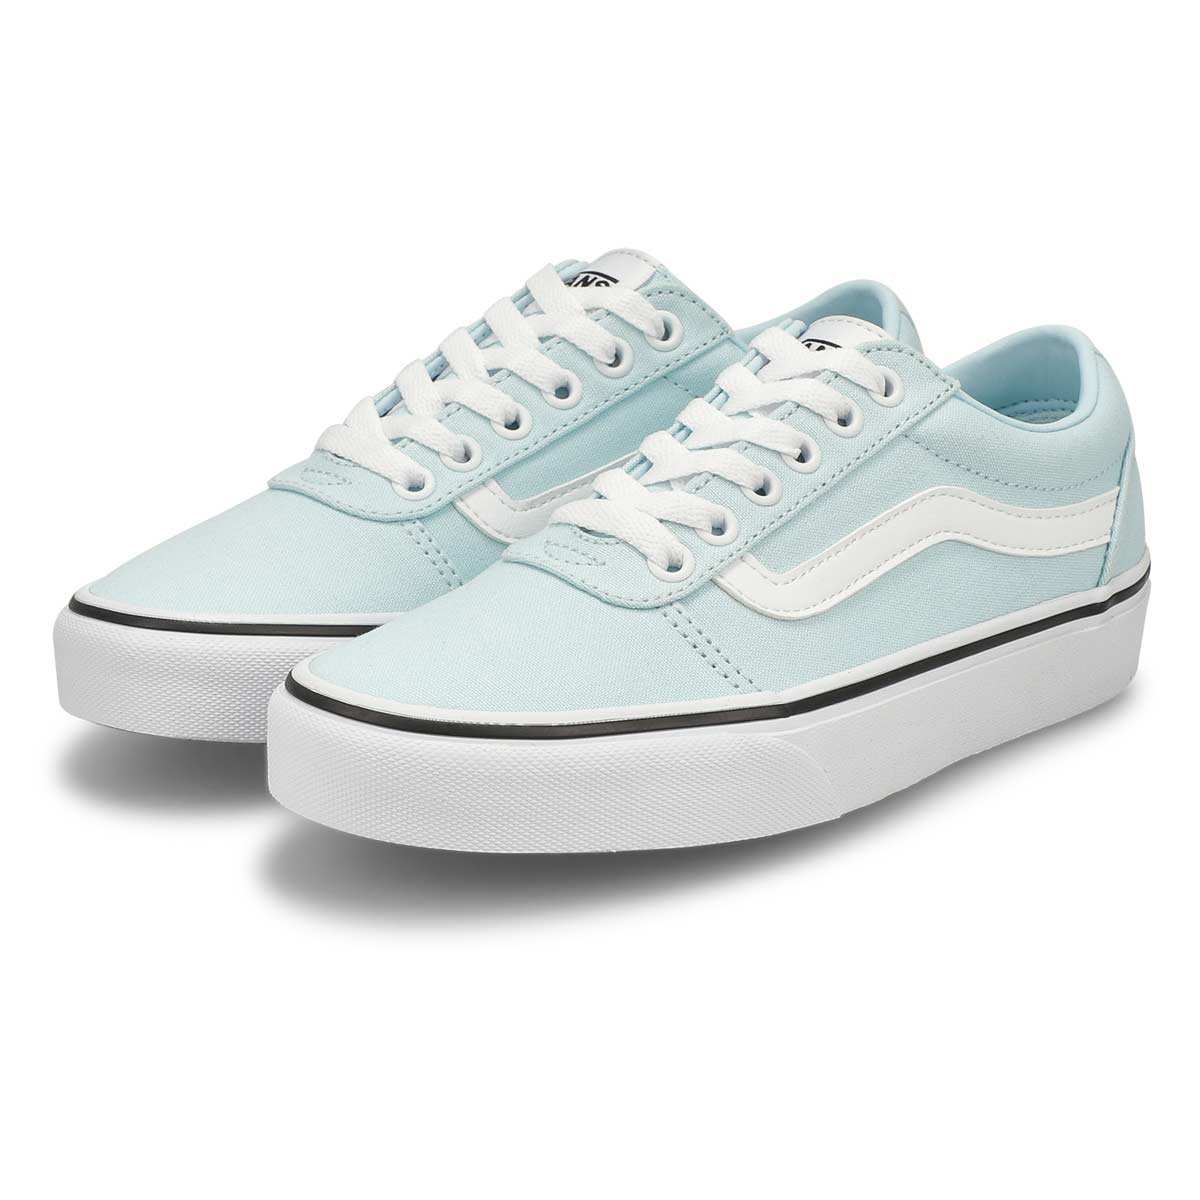 Women's Ward Sneaker - Blue/White